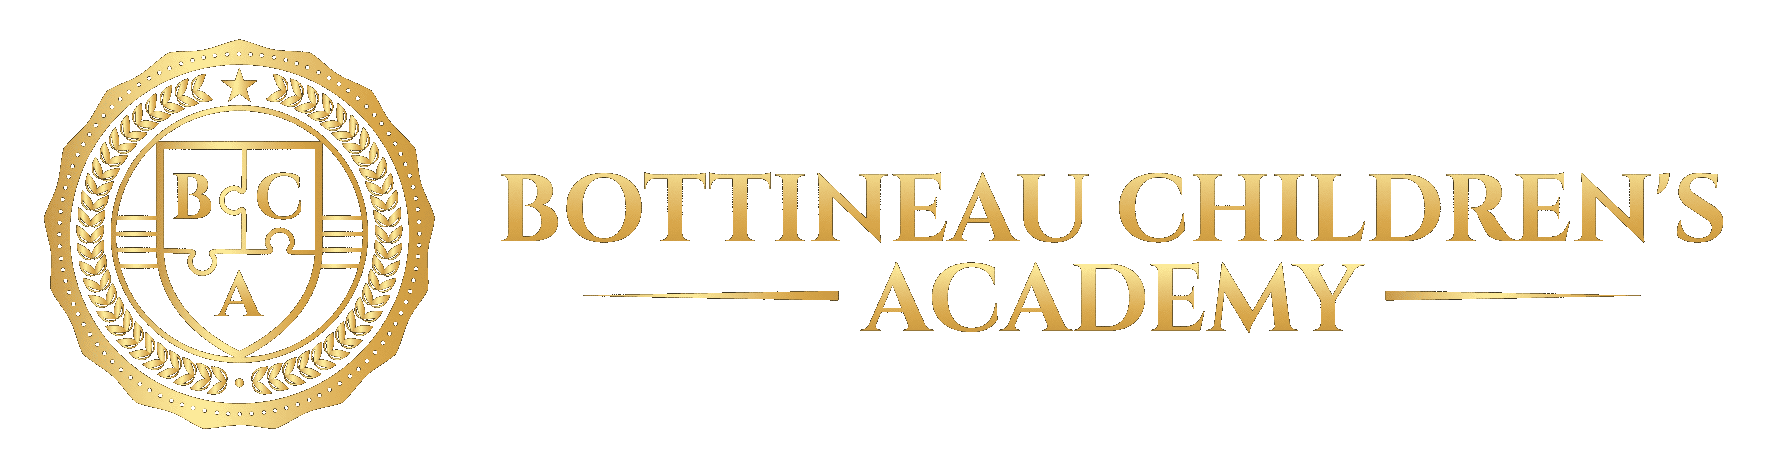 Bottineau Children's Academy